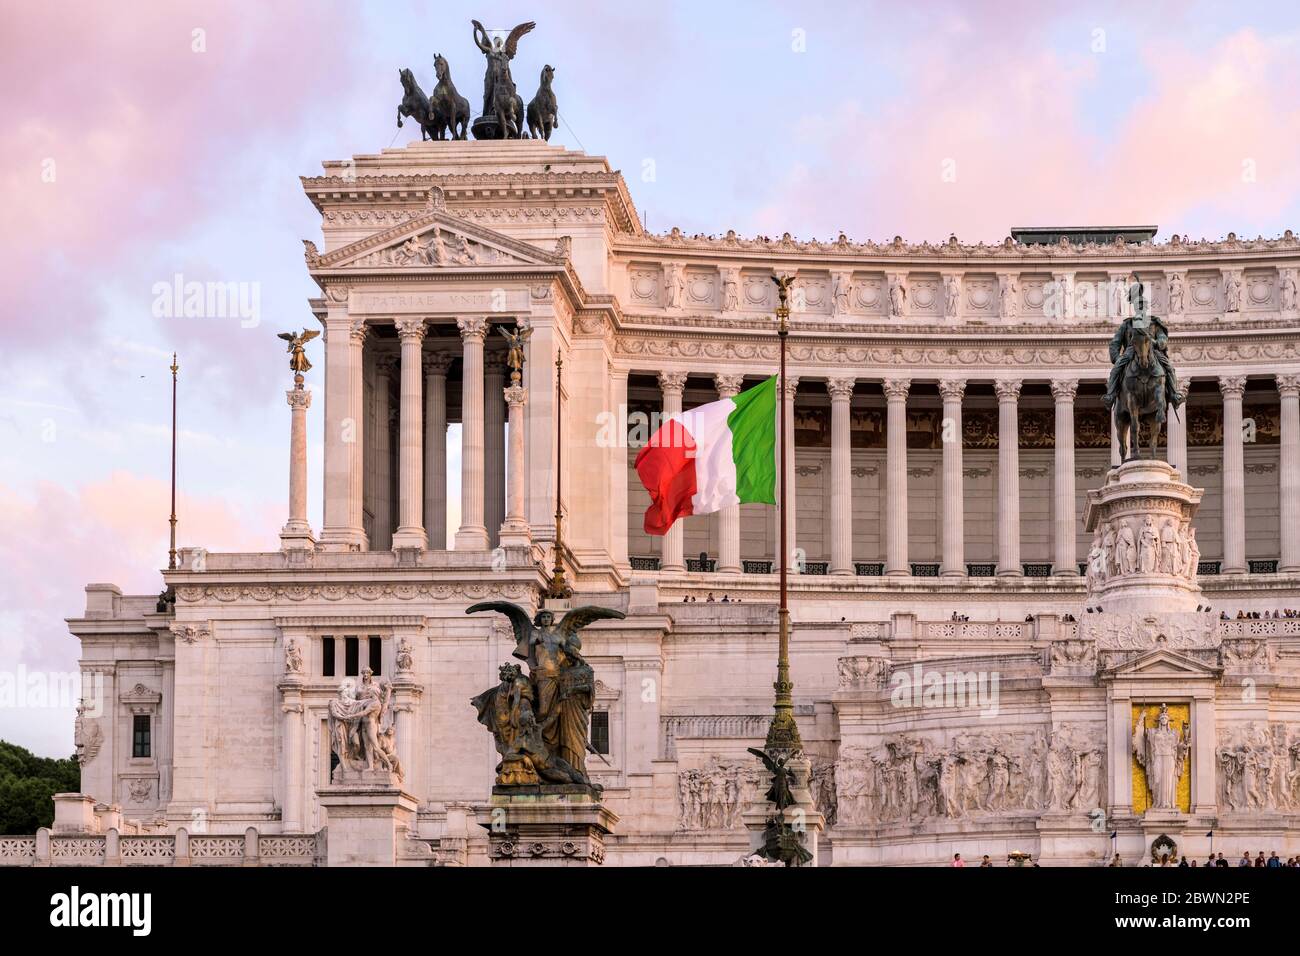 Italienische Flagge fliegen in Altare della Patria - EIN Blick auf den Sonnenuntergang über der italienischen Nationalflagge fliegen vor der Altare della Patria. Rom, Italien. Stockfoto